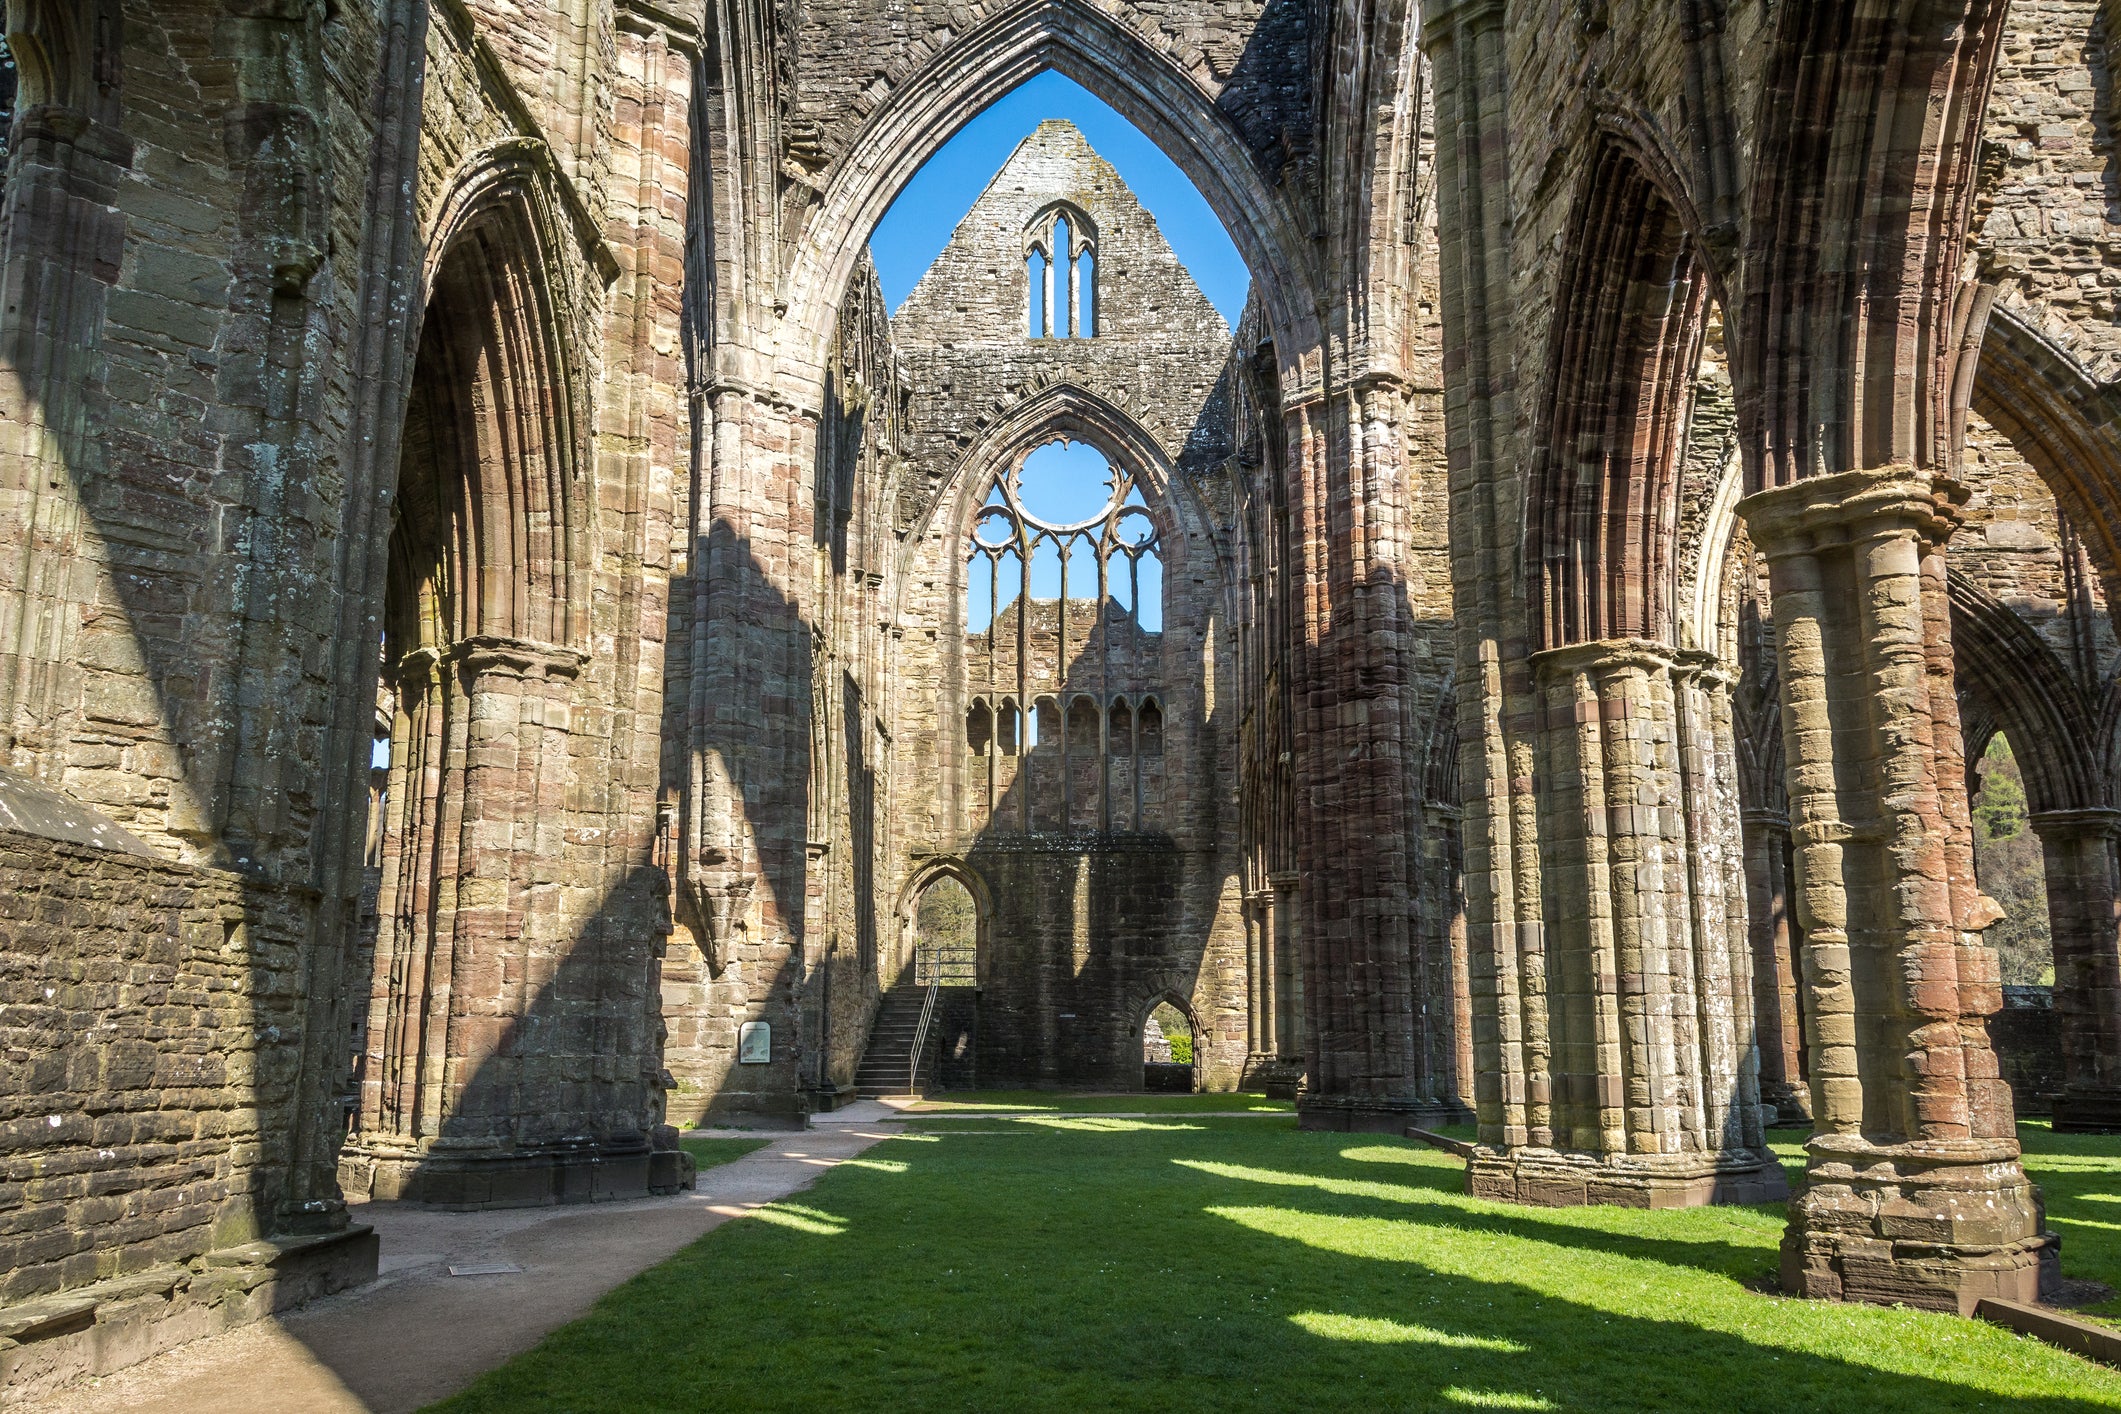 Tintern Abbey in Wales